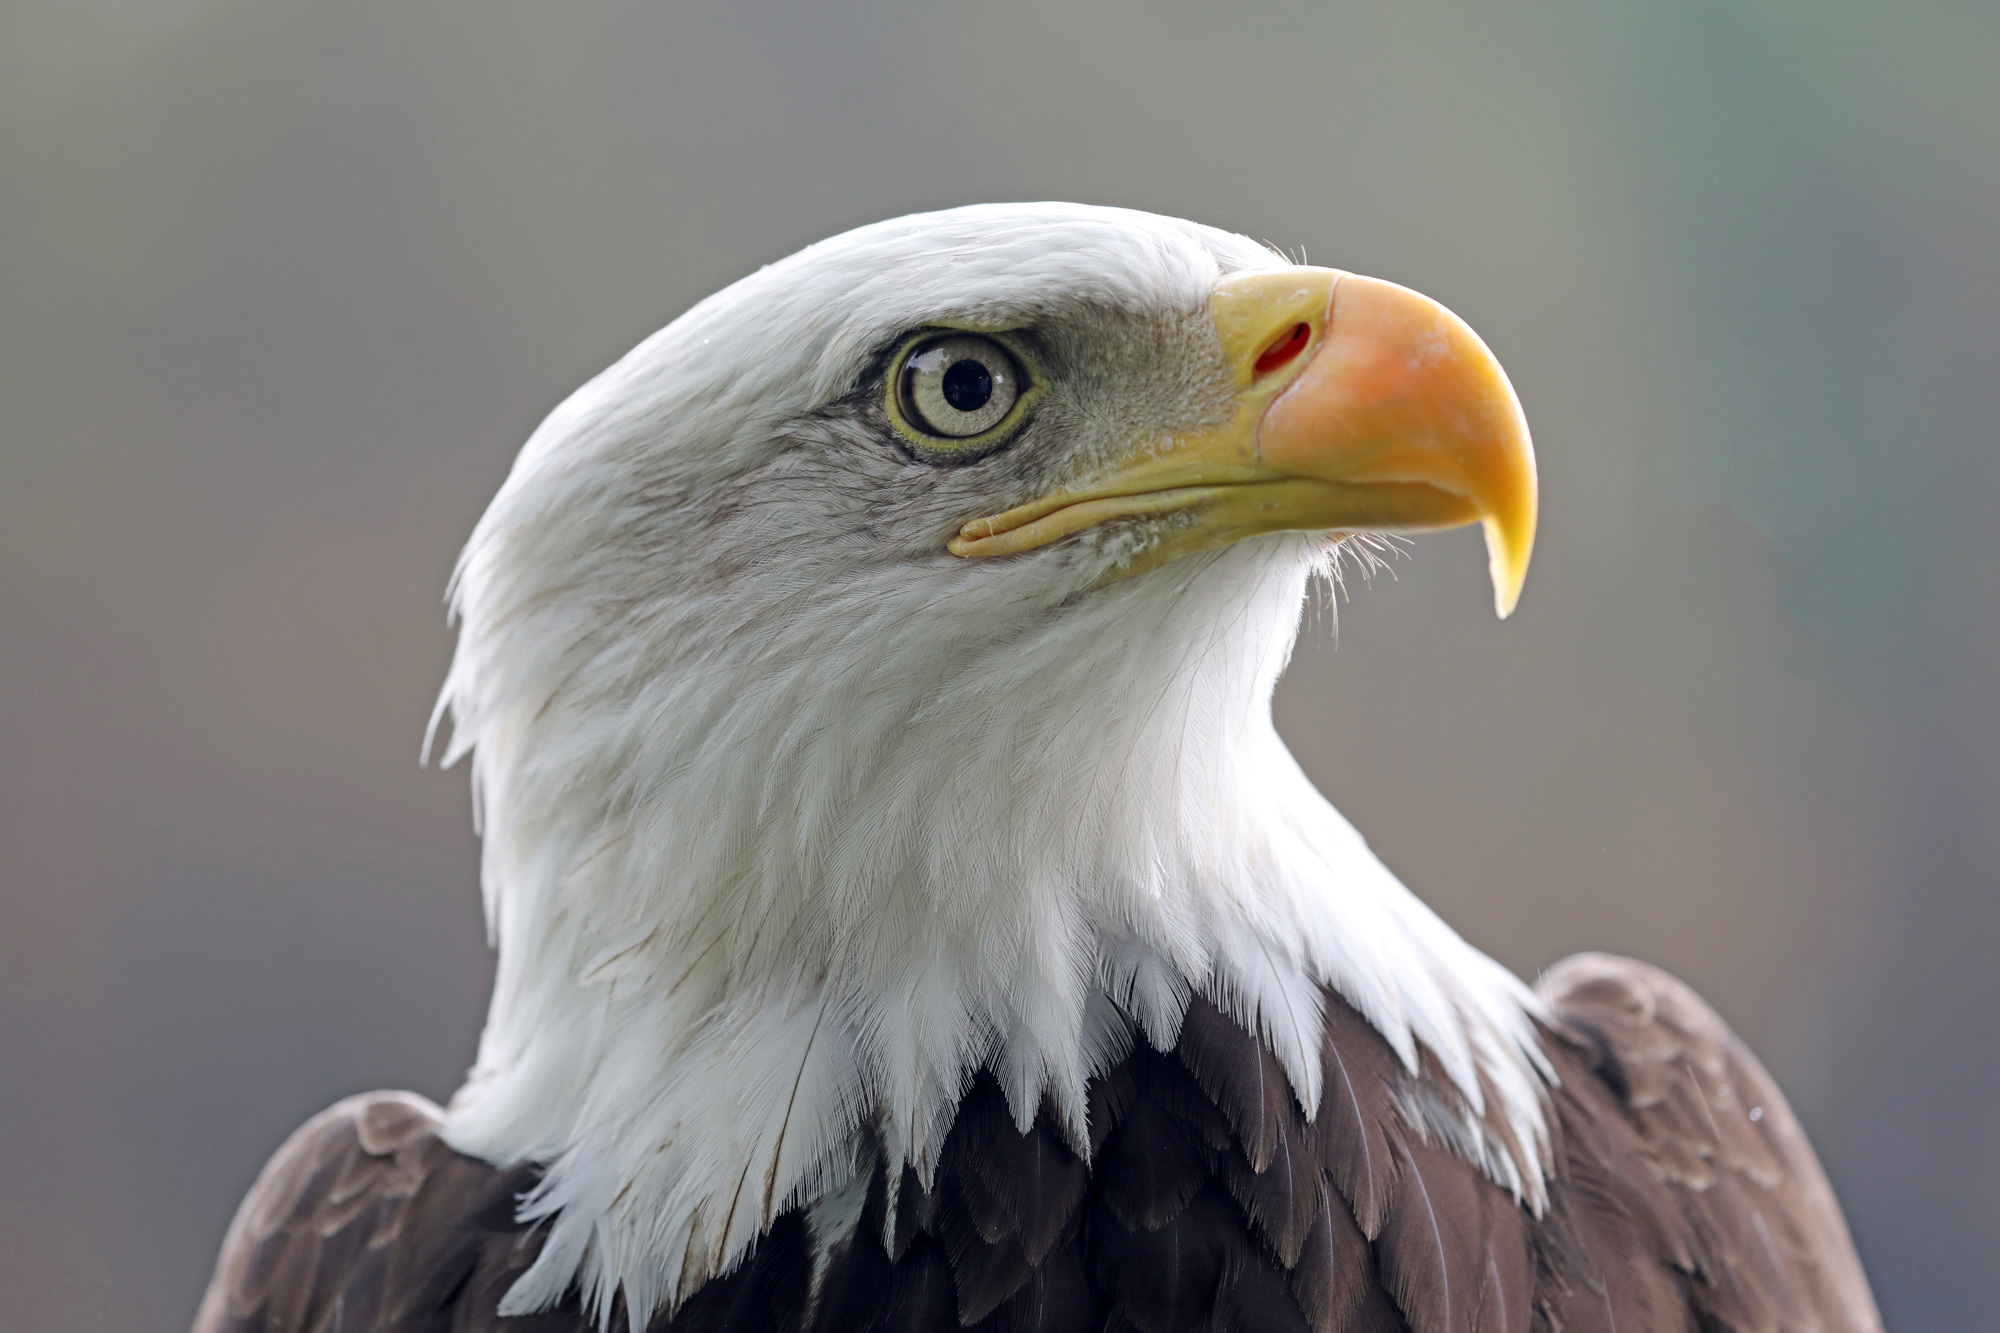 联邦纪事-老鹰许可证;更新的秃鹰种群估计和采取限制